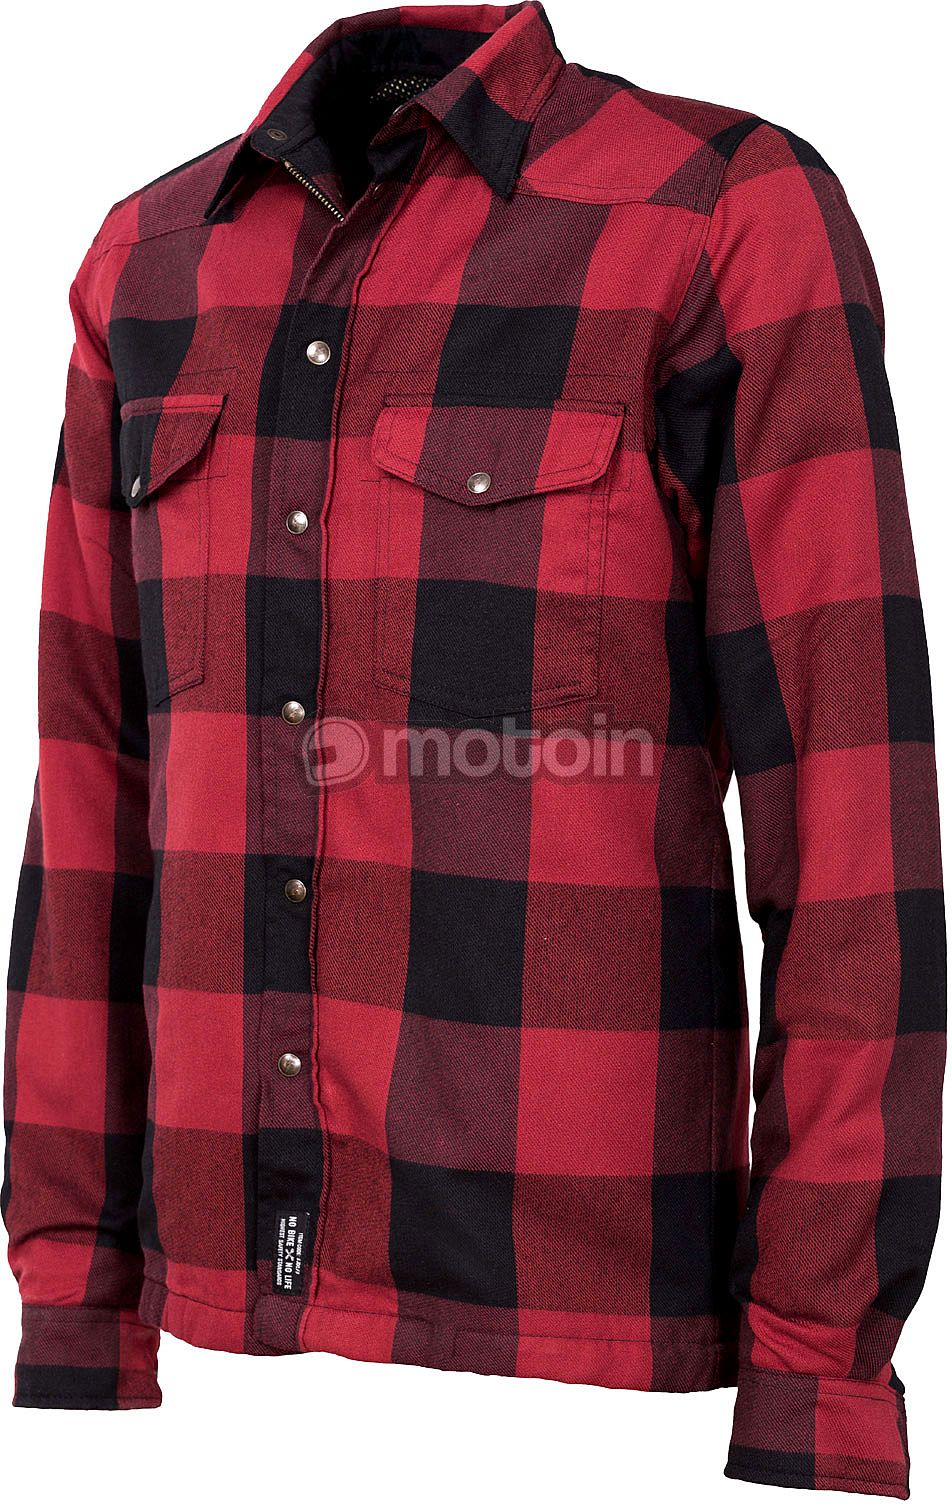 John Doe Motoshirt, camisa/chaqueta textil